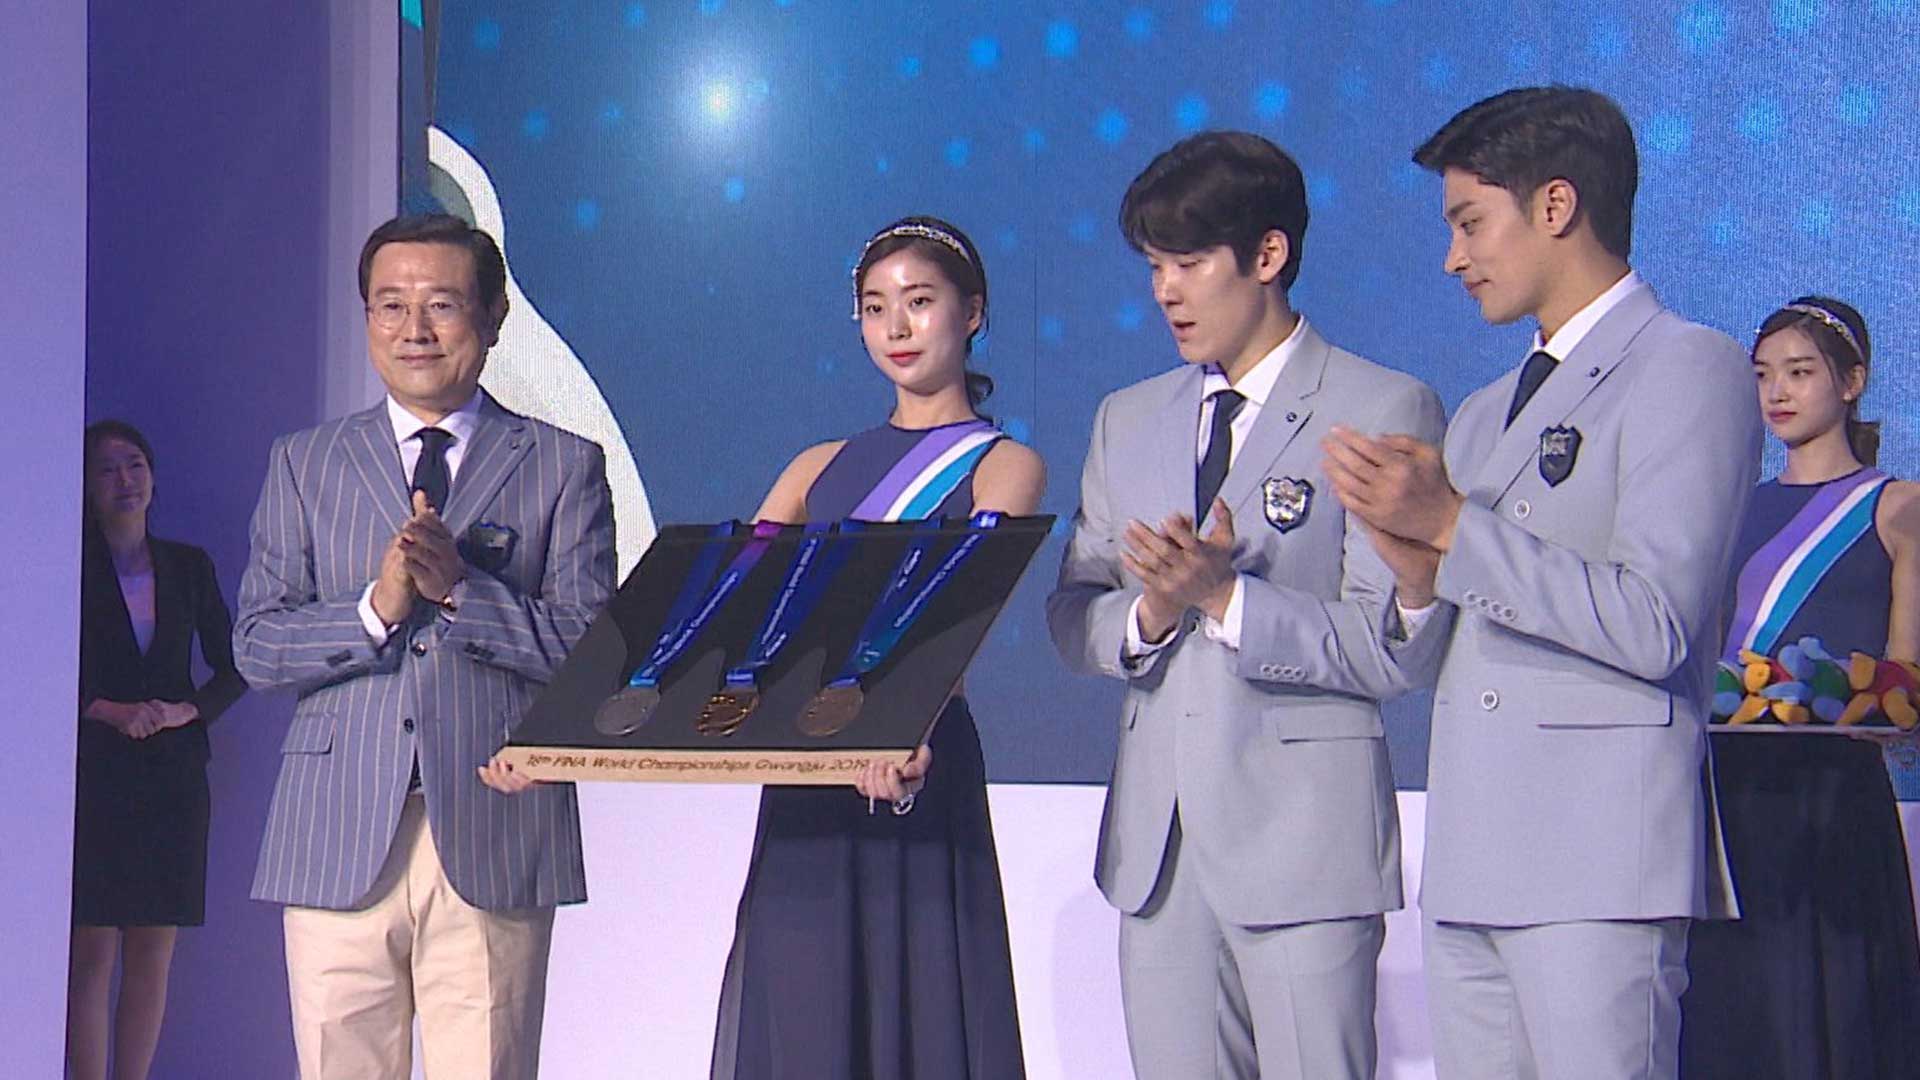 광주세계수영선수권대회 공식 유니폼·메달 공개